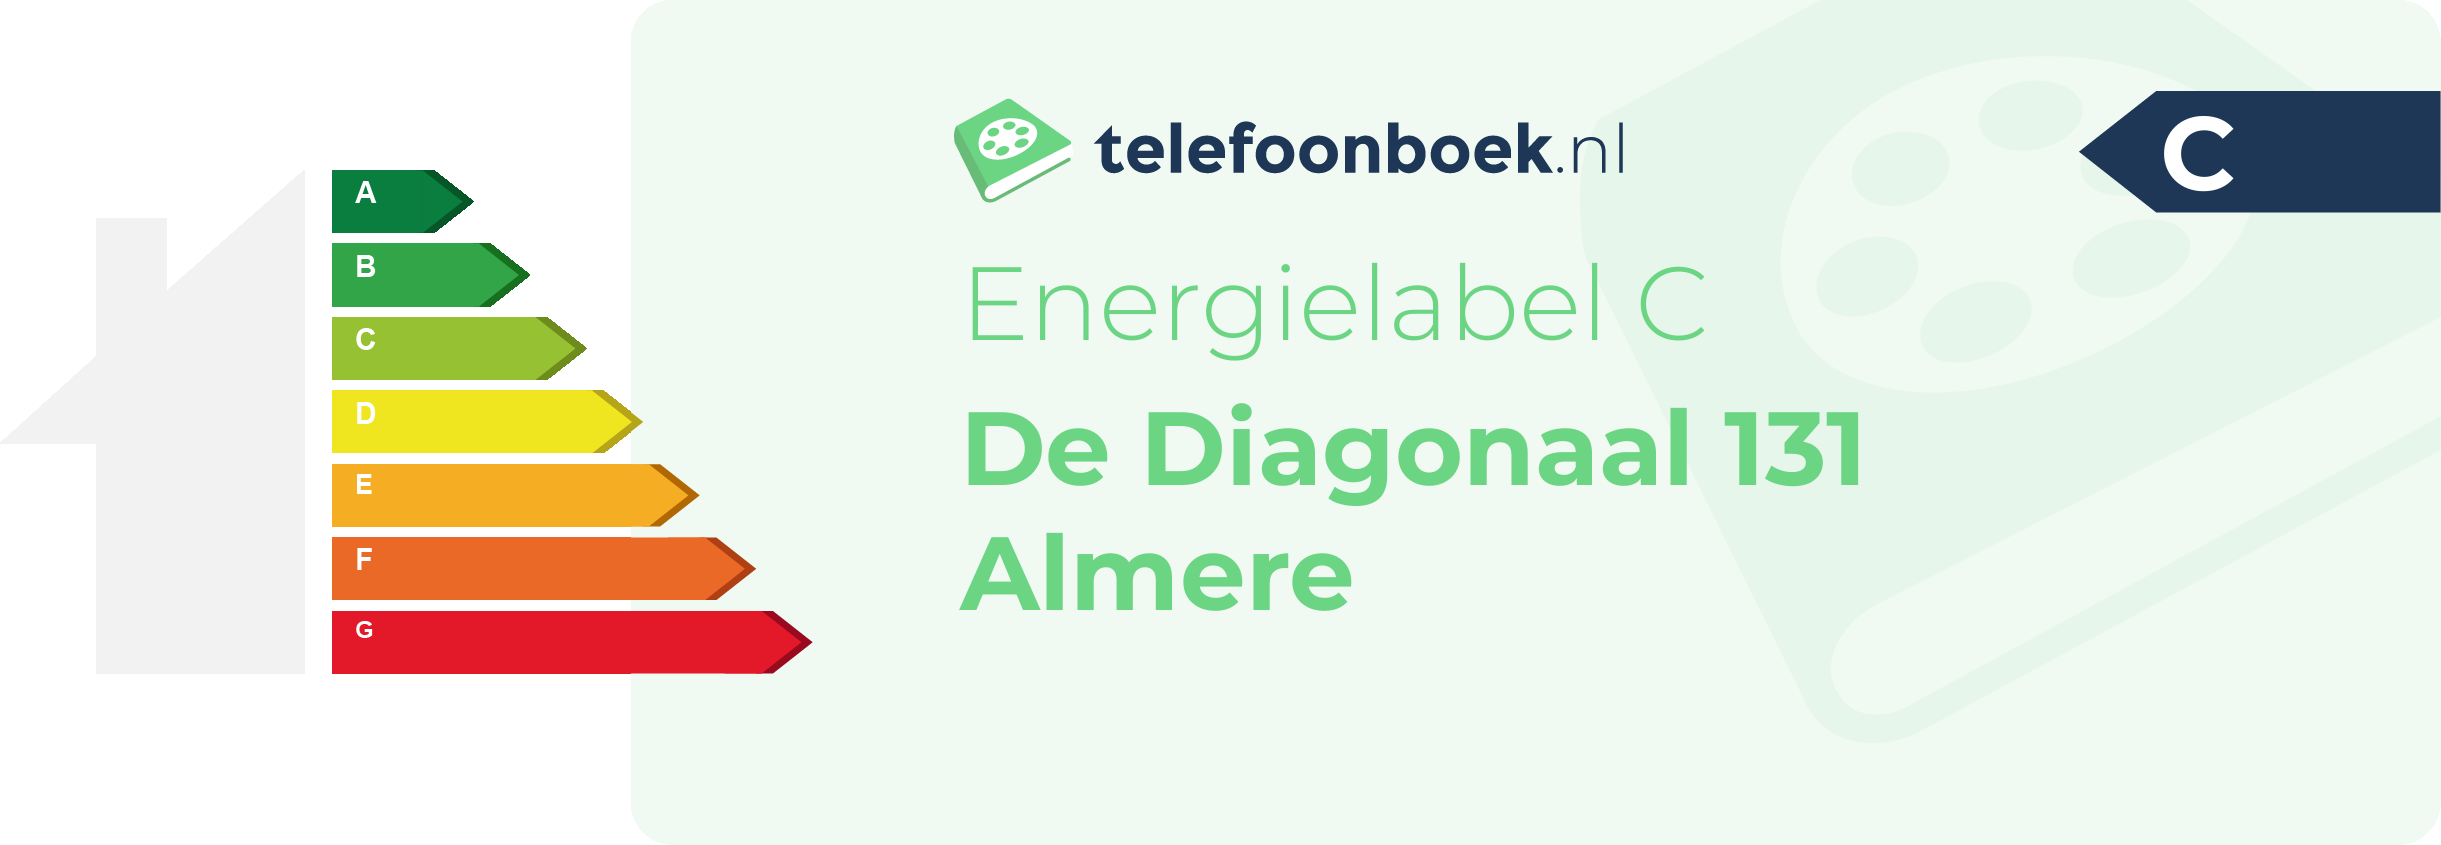 Energielabel De Diagonaal 131 Almere